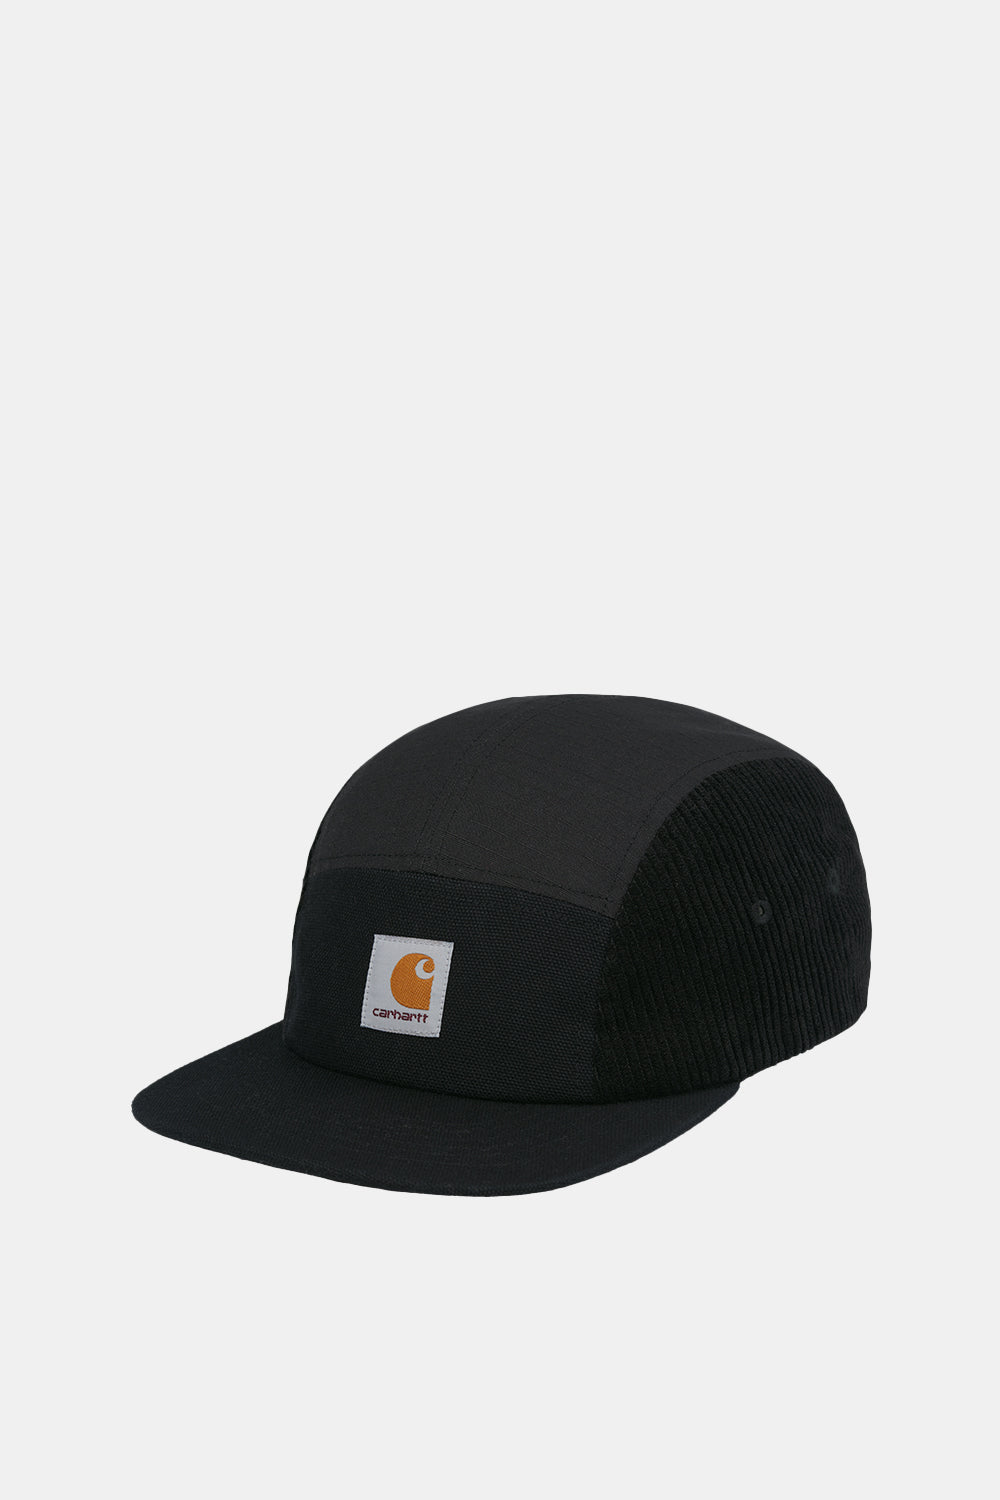 Carhartt WIP Medley Cap (Black)